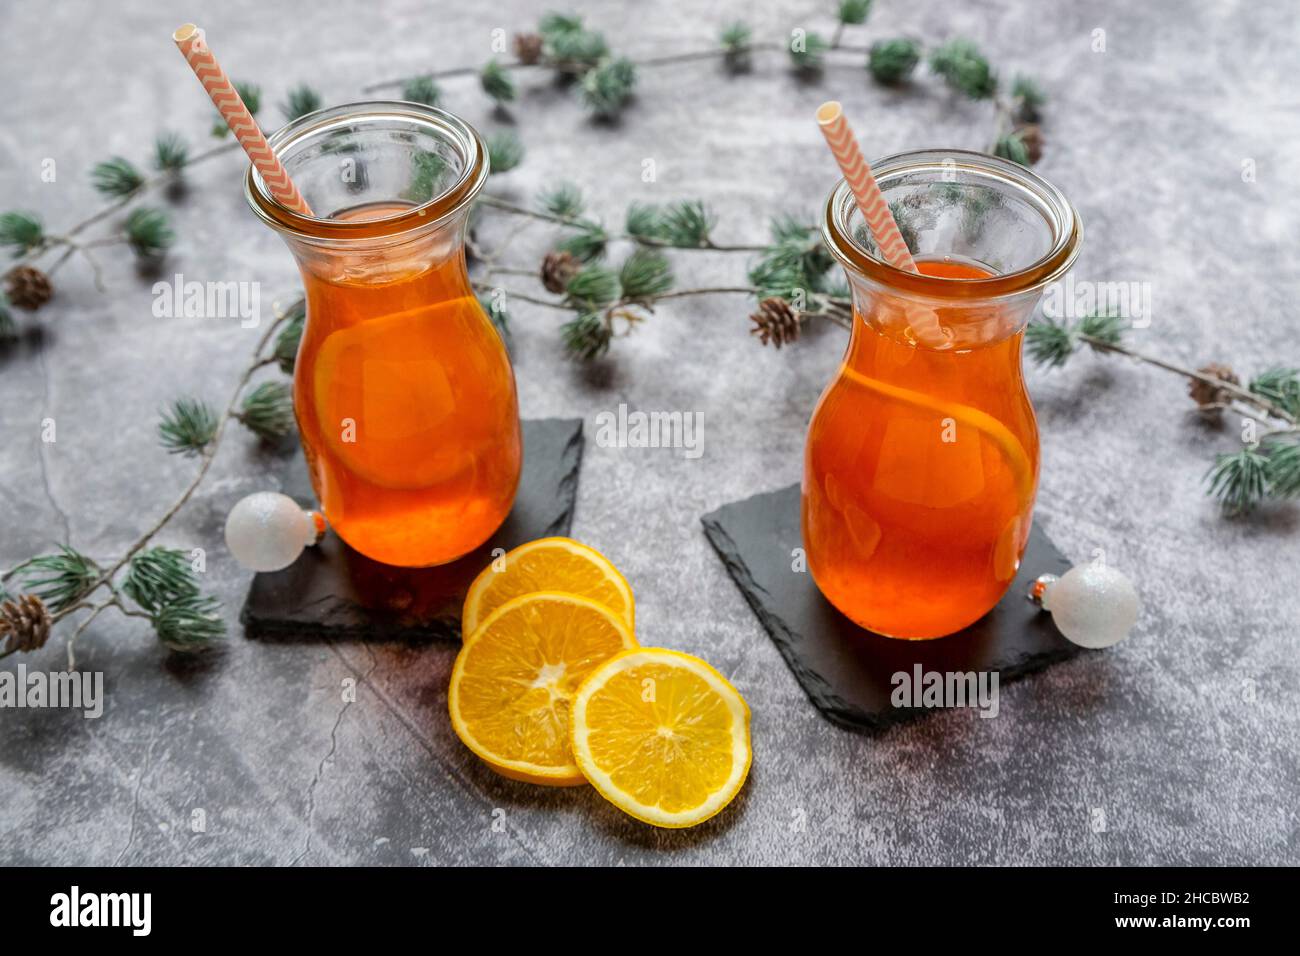 Estudio de ramitas y dos botellas de Aperol caliente con rodajas de naranja Foto de stock